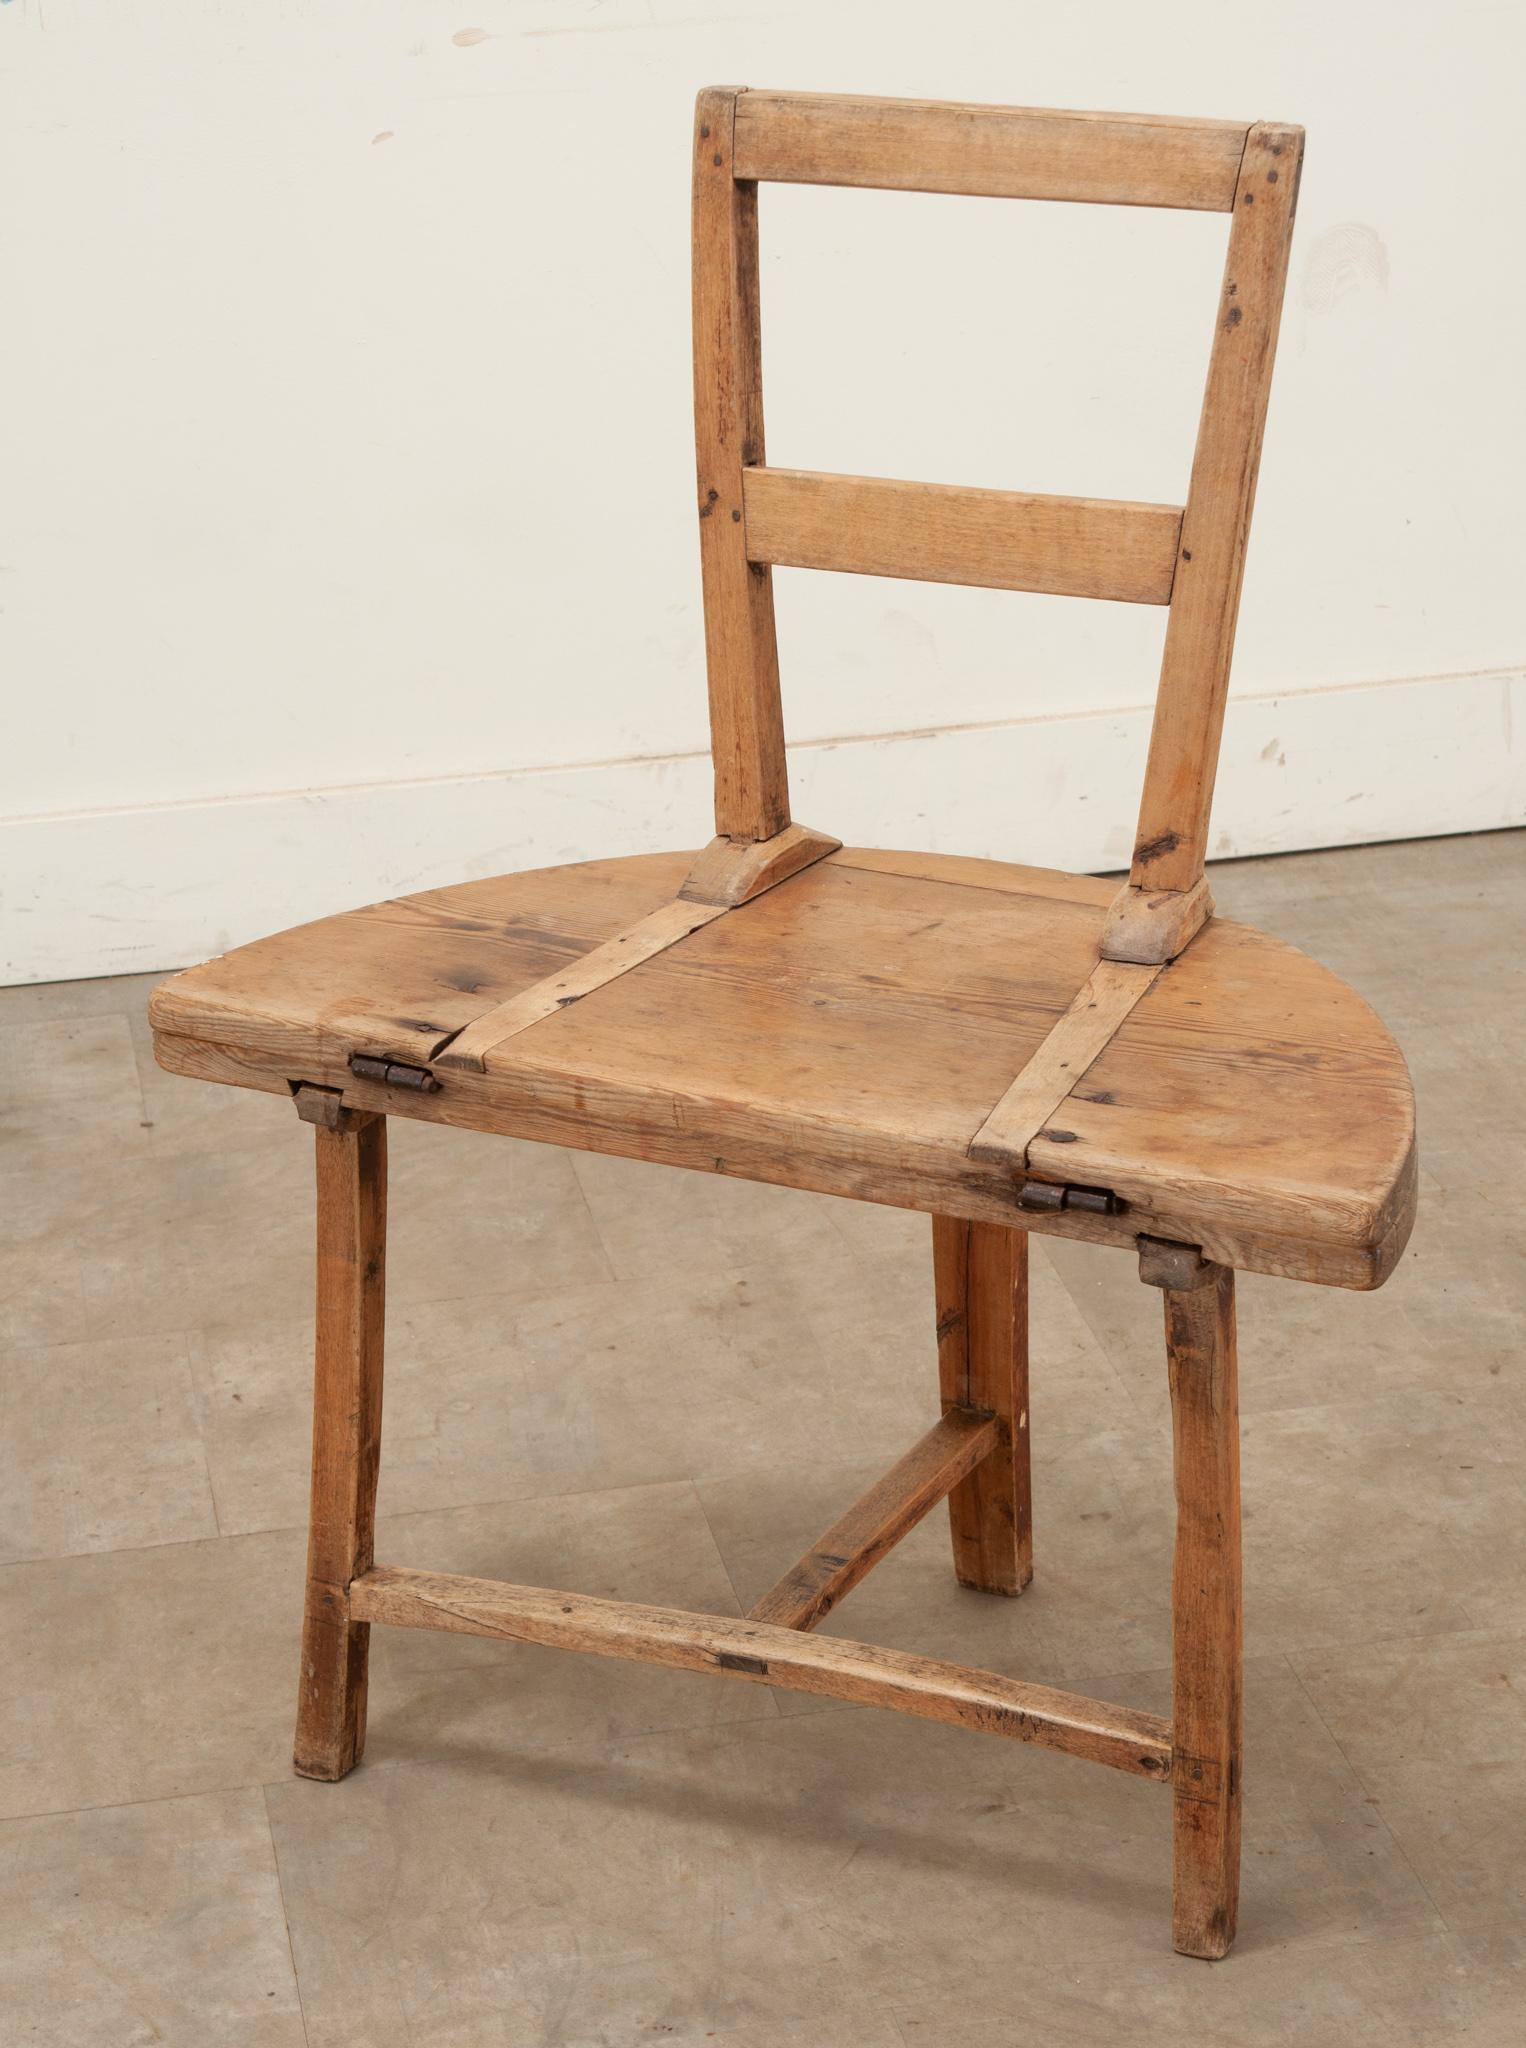 Chaise-table suédoise en pin des années 1700. Cette antiquité fonctionnelle est une chaise qui se transforme en table grâce à des charnières en fer forgé à la main qui permettent au dossier de la chaise de se rabattre et de former le plateau et les